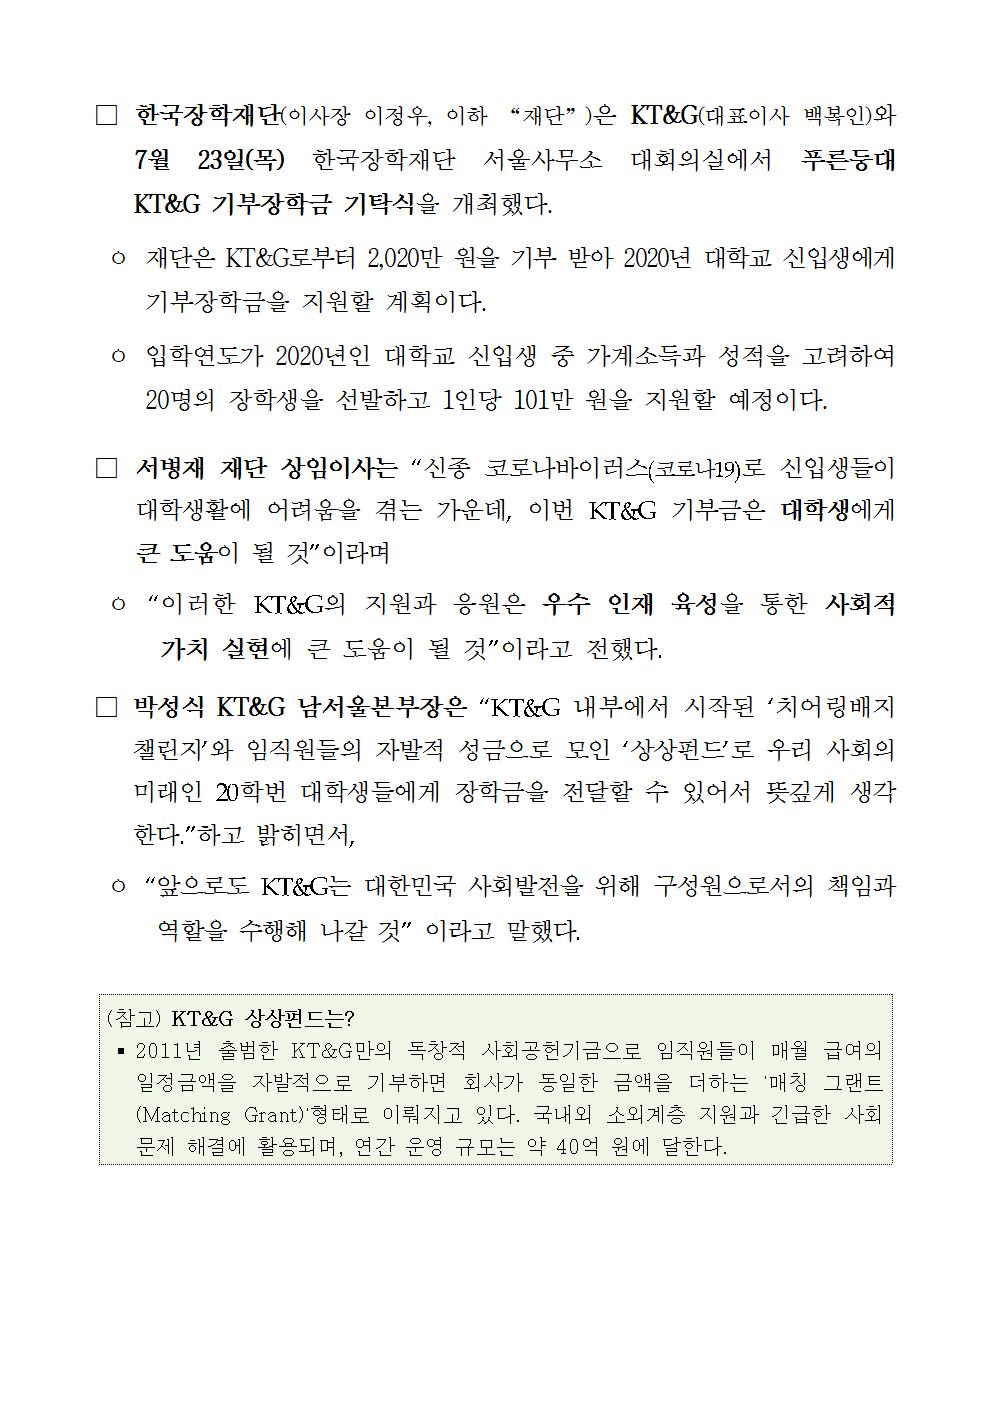 07-23(목)[보도자료] 한국장학재단 푸른등대 KT&G 기부장학금 기탁식 개최002.jpg